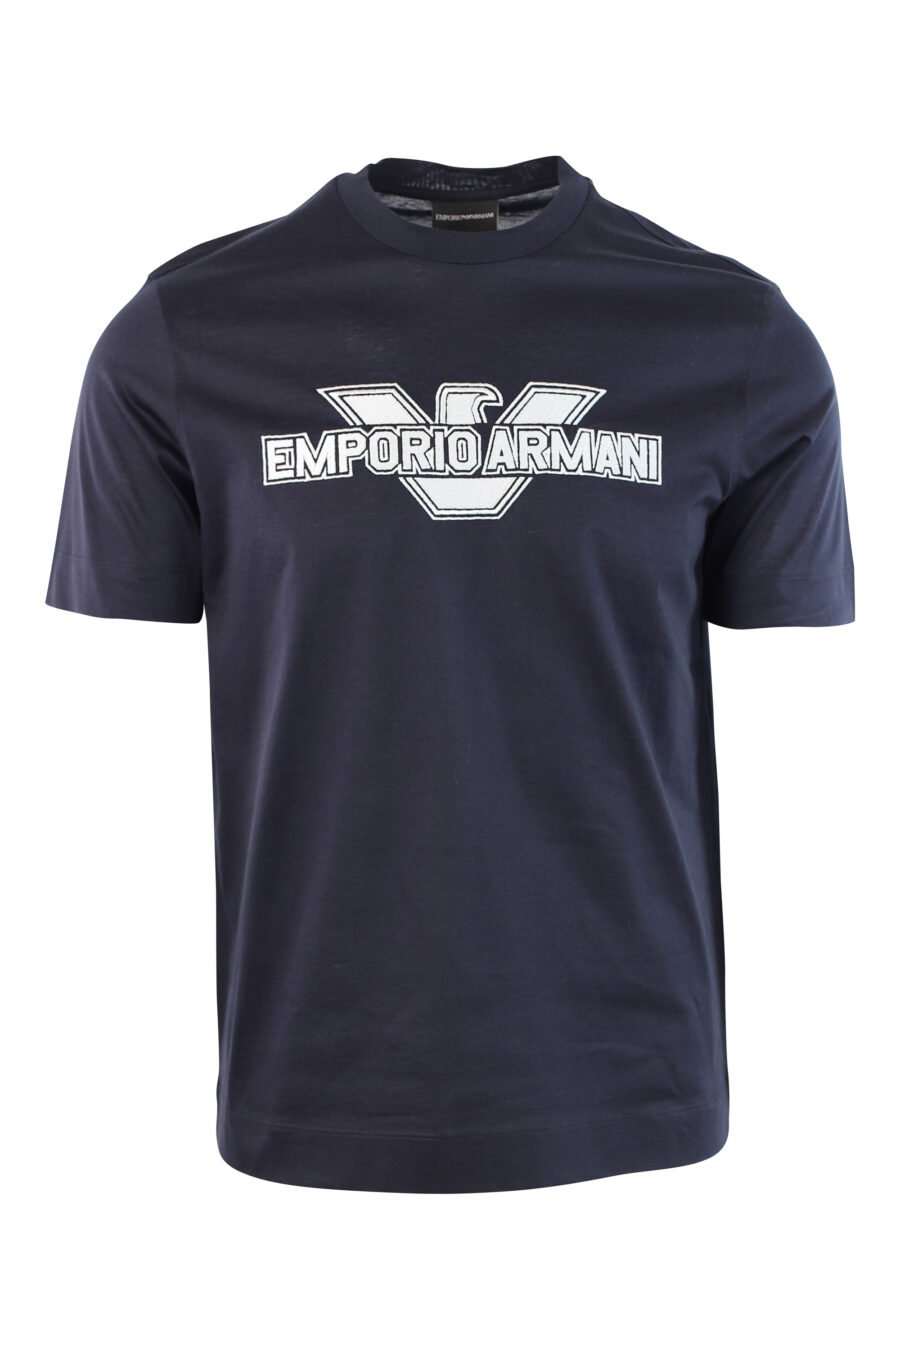 Camiseta azul oscura con logo centrado bordado - IMG 3779